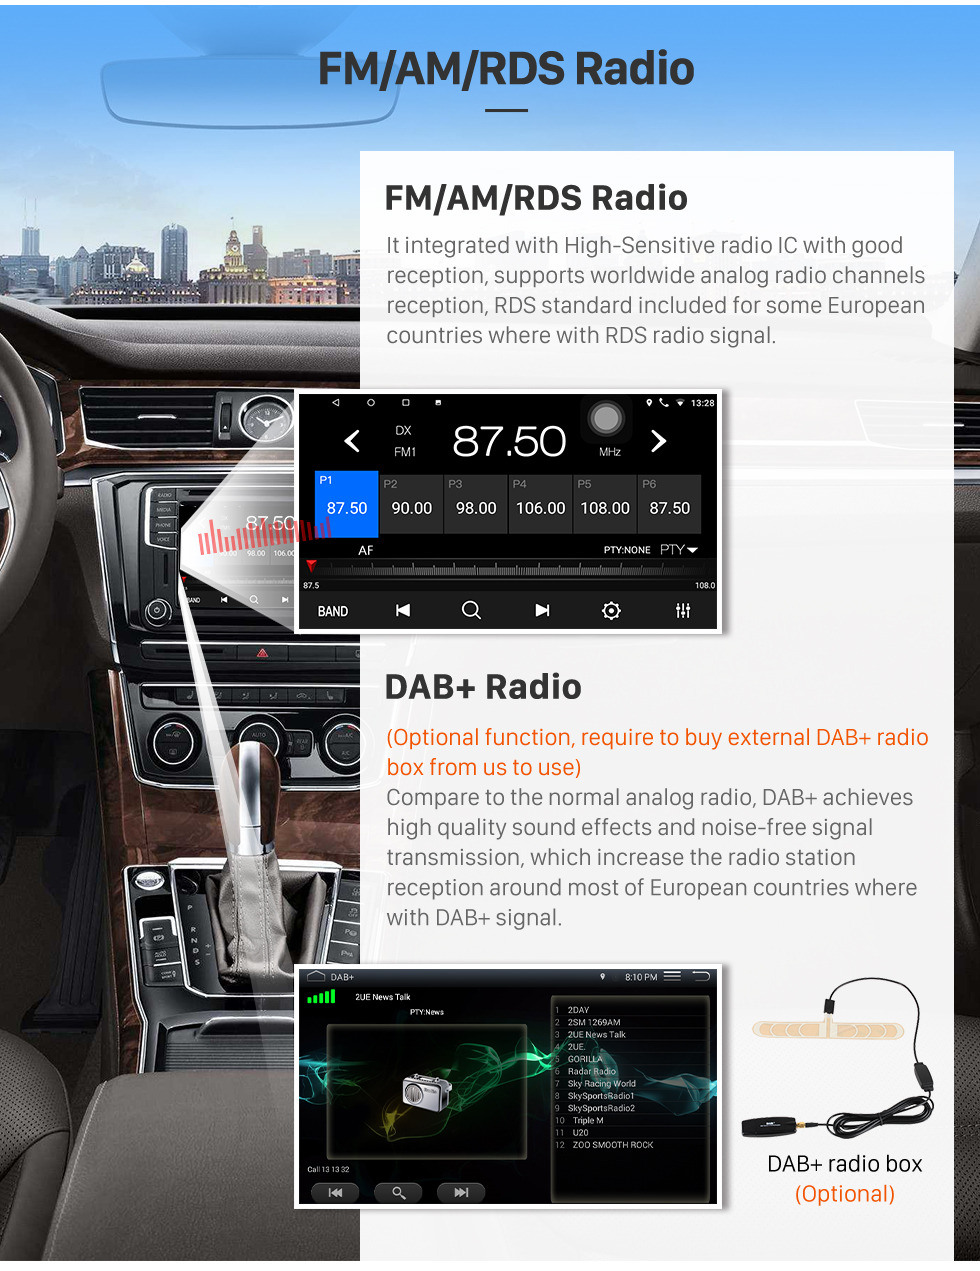 Seicane Rádio de navegação GPS Android 10.0 de 9 polegadas para 2000-2015 VW Volkswagen Crafter Mercedes Benz Viano / Vito / Classe B W245 / Sprinter / A Classe W169 com Bluetooth WiFi Suporte a tela sensível ao toque Carplay DVR